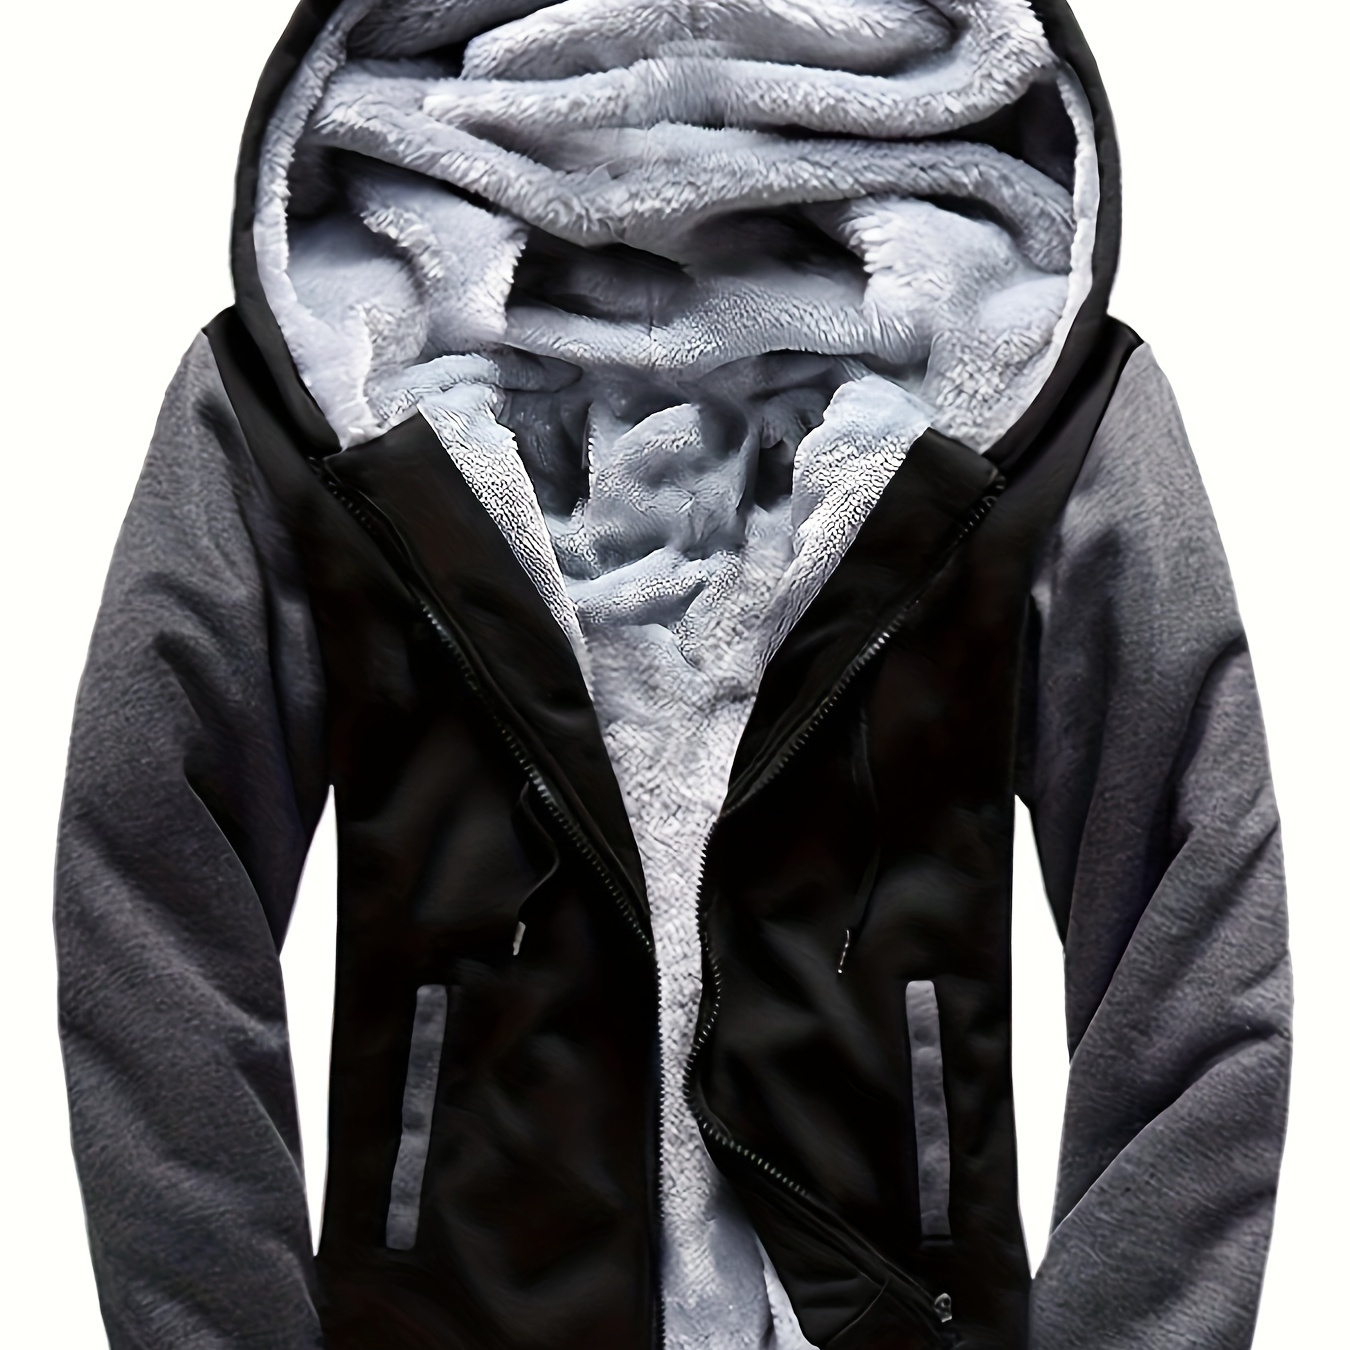 

Veste polaire chaude à capuche, manteau décontracté et coloré, pour homme - Convient pour l'automne ou l'hiver